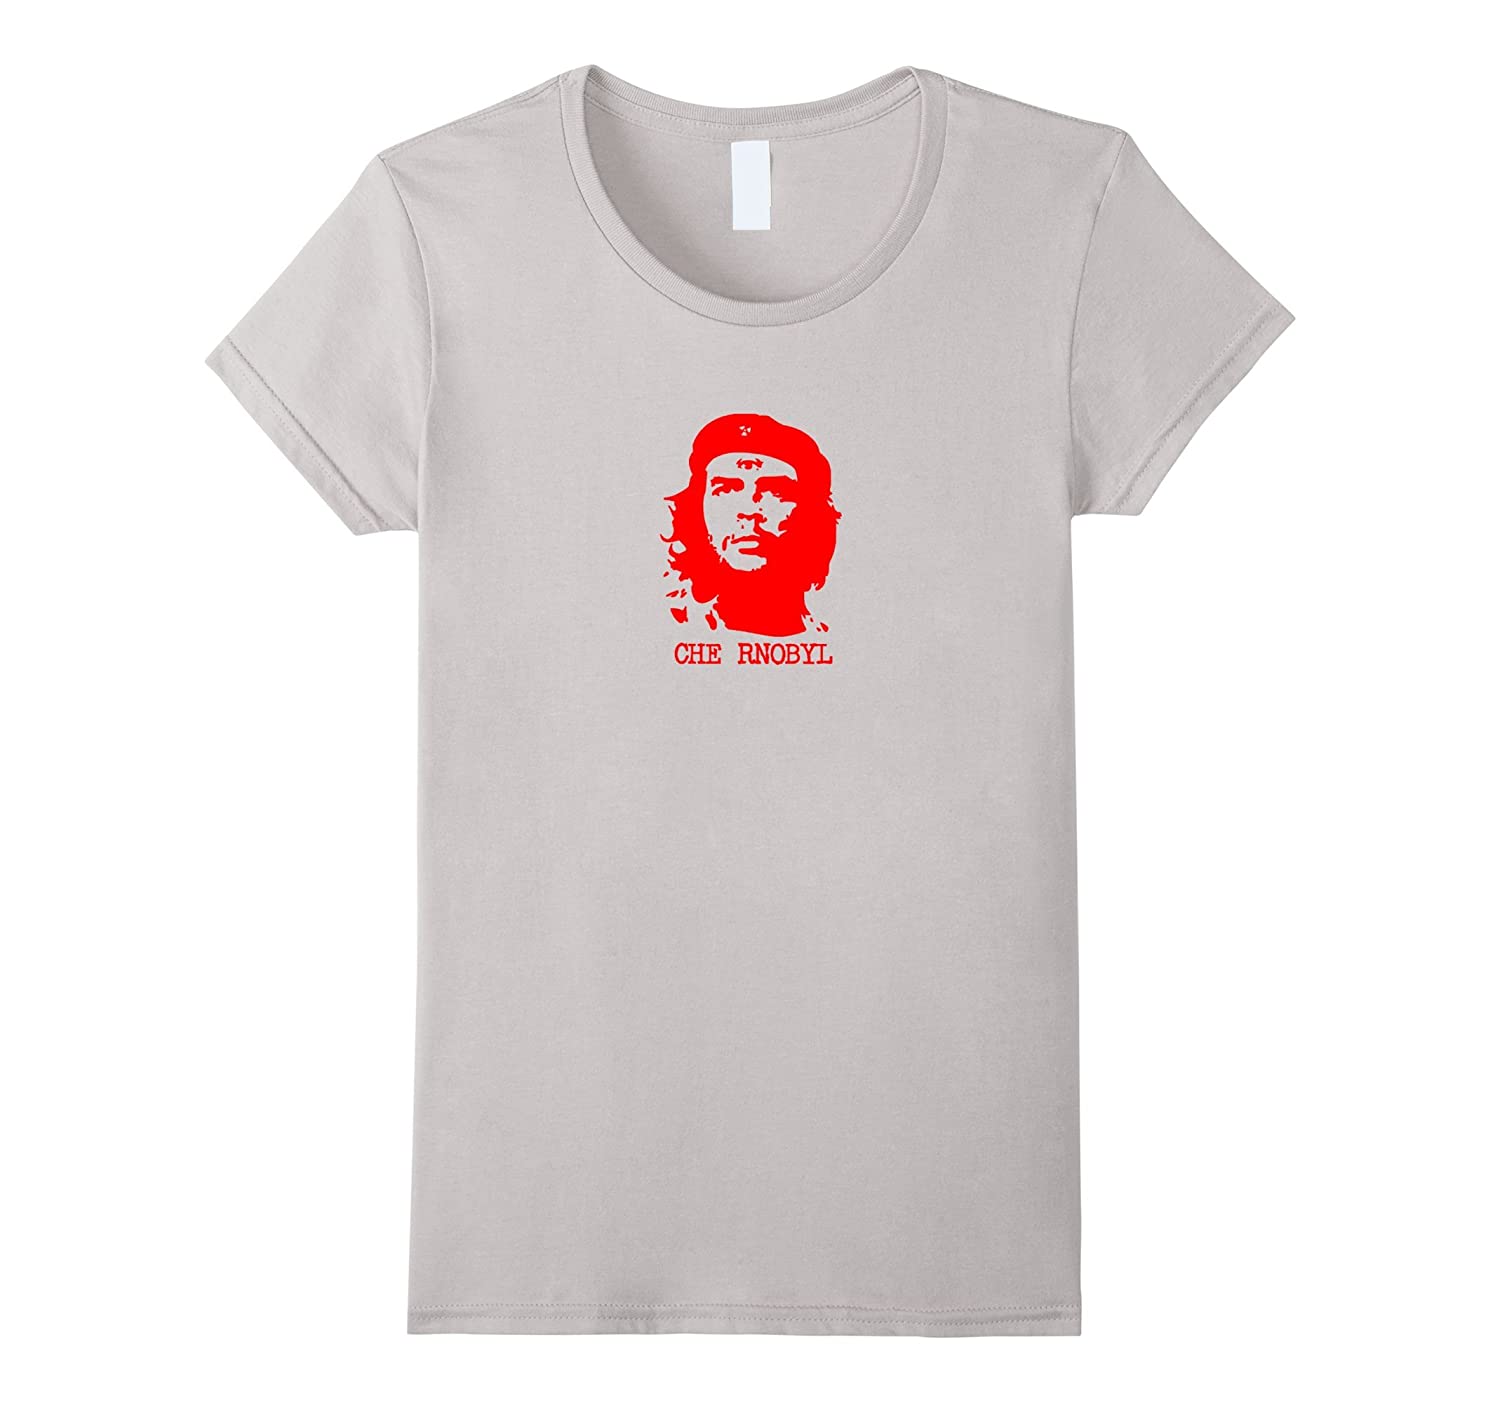 Detail Che Guevara T Shirts Amazon Nomer 43